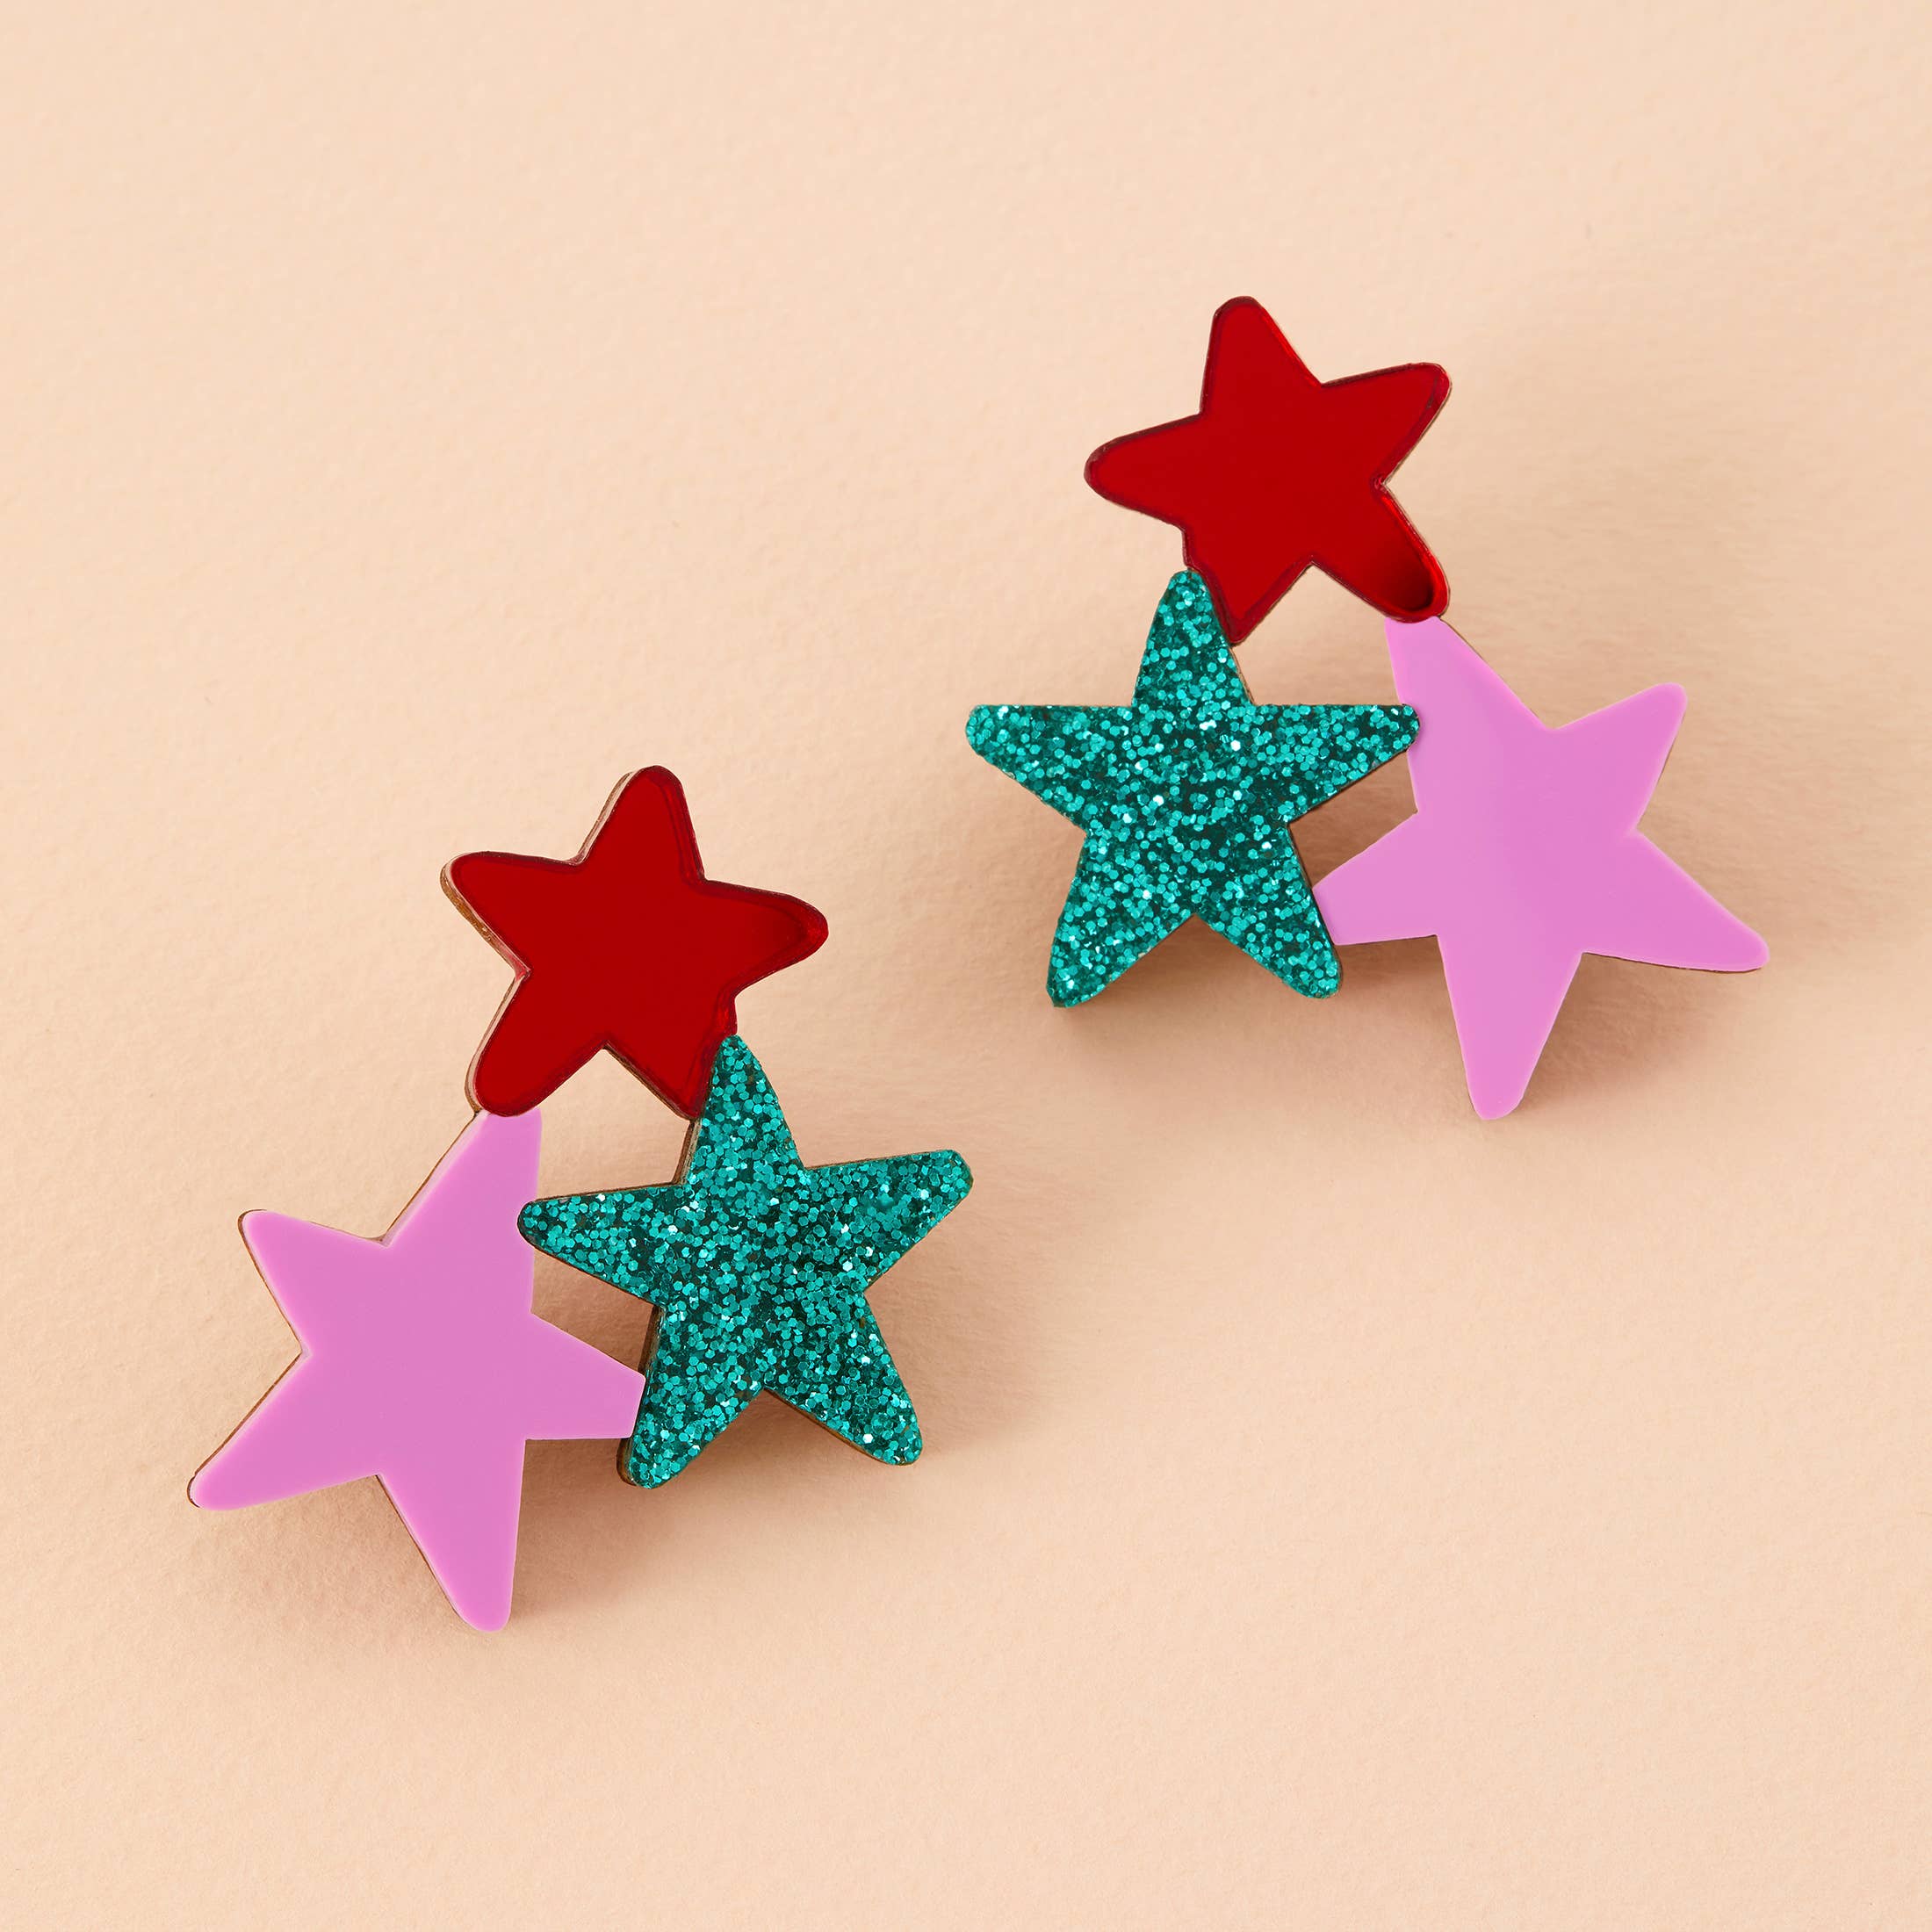 Statement Star Earrings - Emerald Glitter